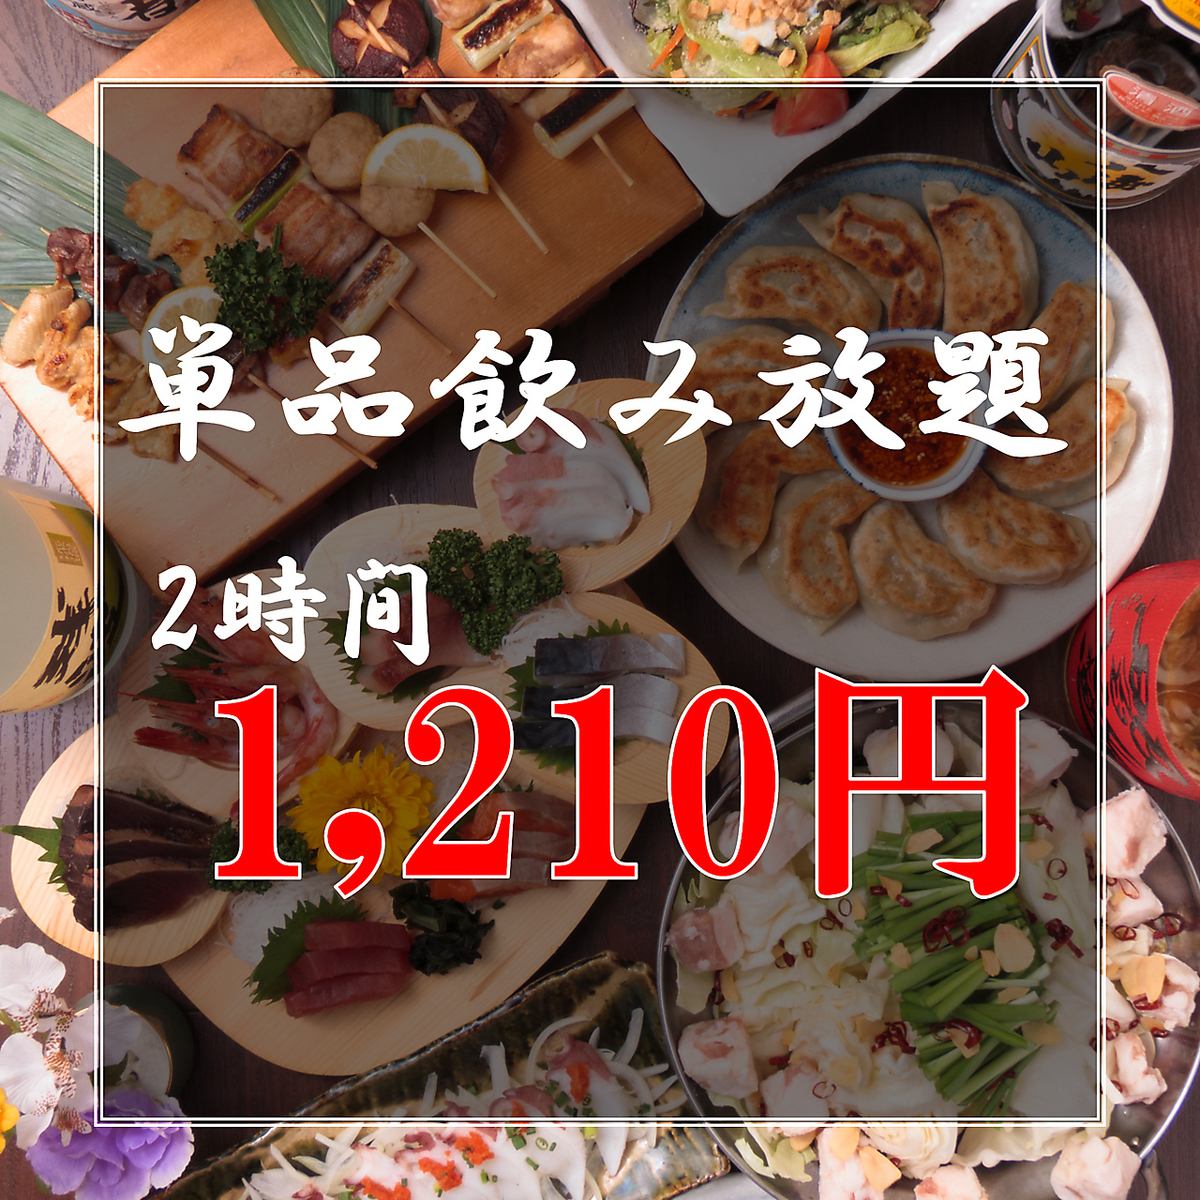 점심 마시고 환영합니다! 2 시간 음료 무제한을 기간 한정으로 1,210 엔으로 제공!